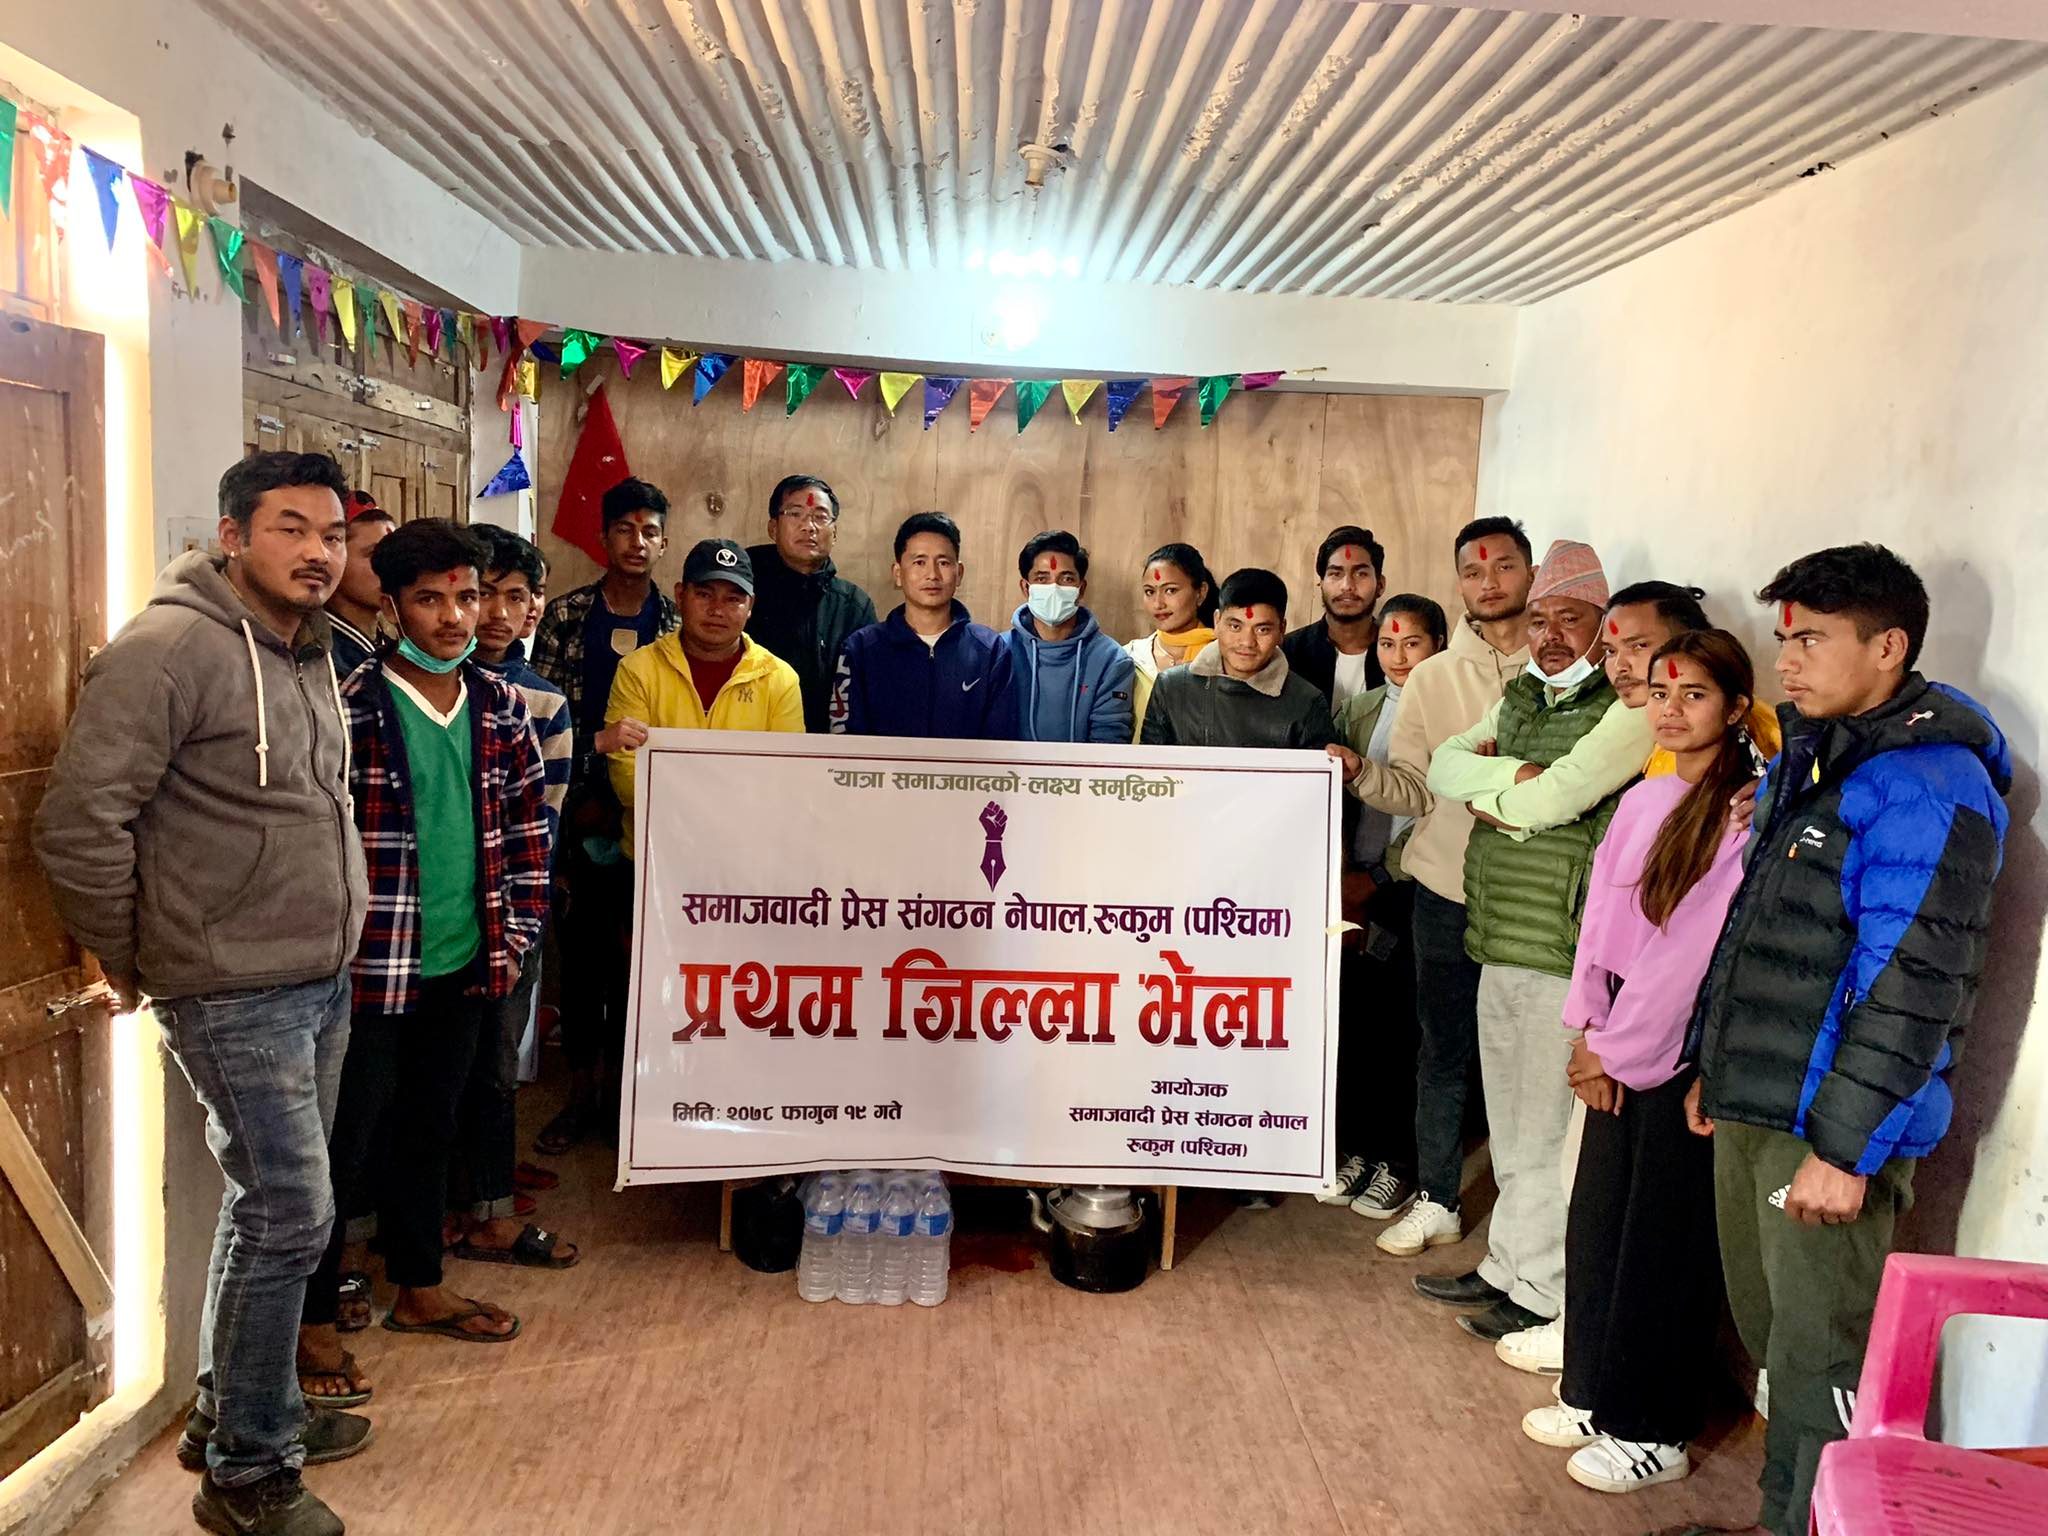 भरत चन्दको अध्यक्षतामा समाजवादी प्रेस संगठन नेपाल रुकुम पश्चिम 